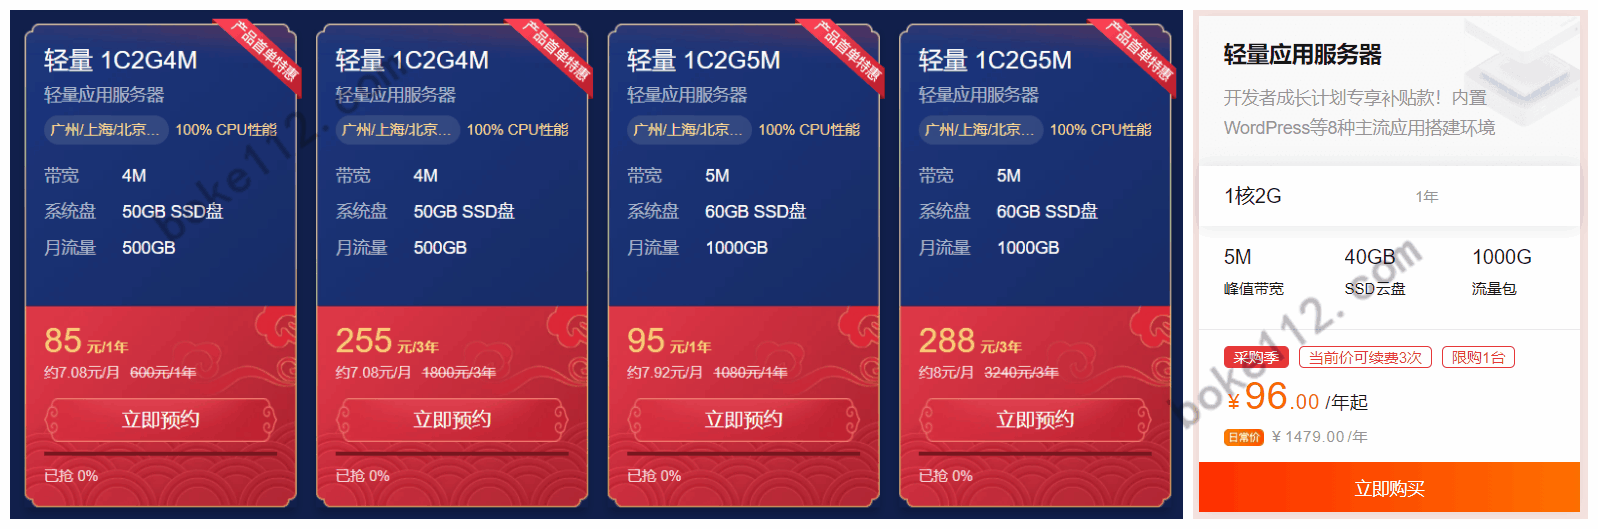 2021采购季腾讯云和阿里云服务器的优惠情况对比及推荐 - 第3张 - 懿古今(www.yigujin.cn)